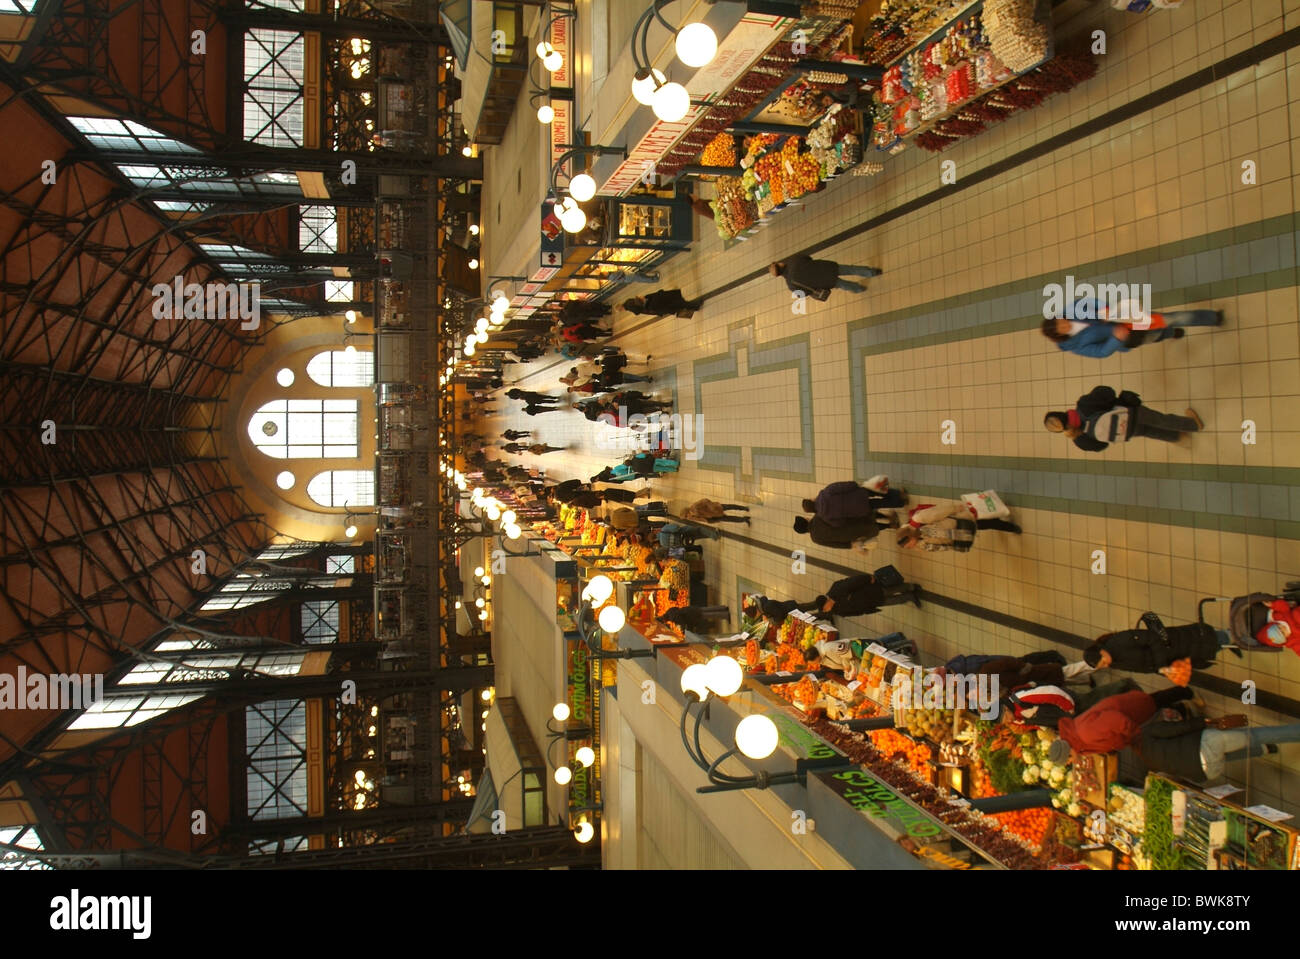 Ungheria Budapest Pest mercato coperto all'interno mercato panoramica Foto Stock